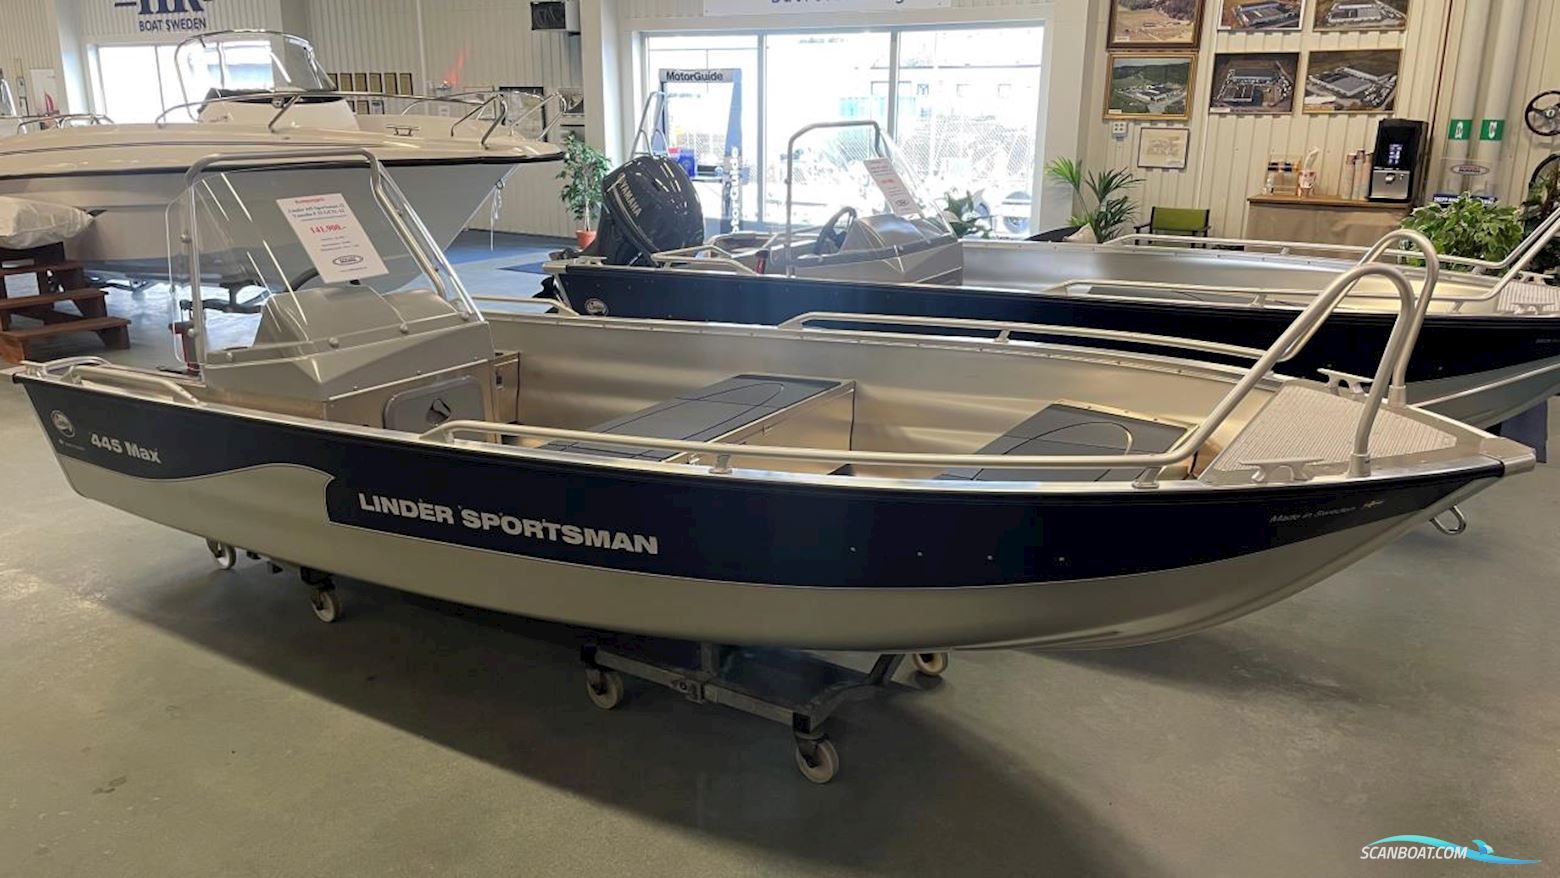 Linder Sportsman 445 Max Motor boat 2022, with Yamaha engine, Sweden